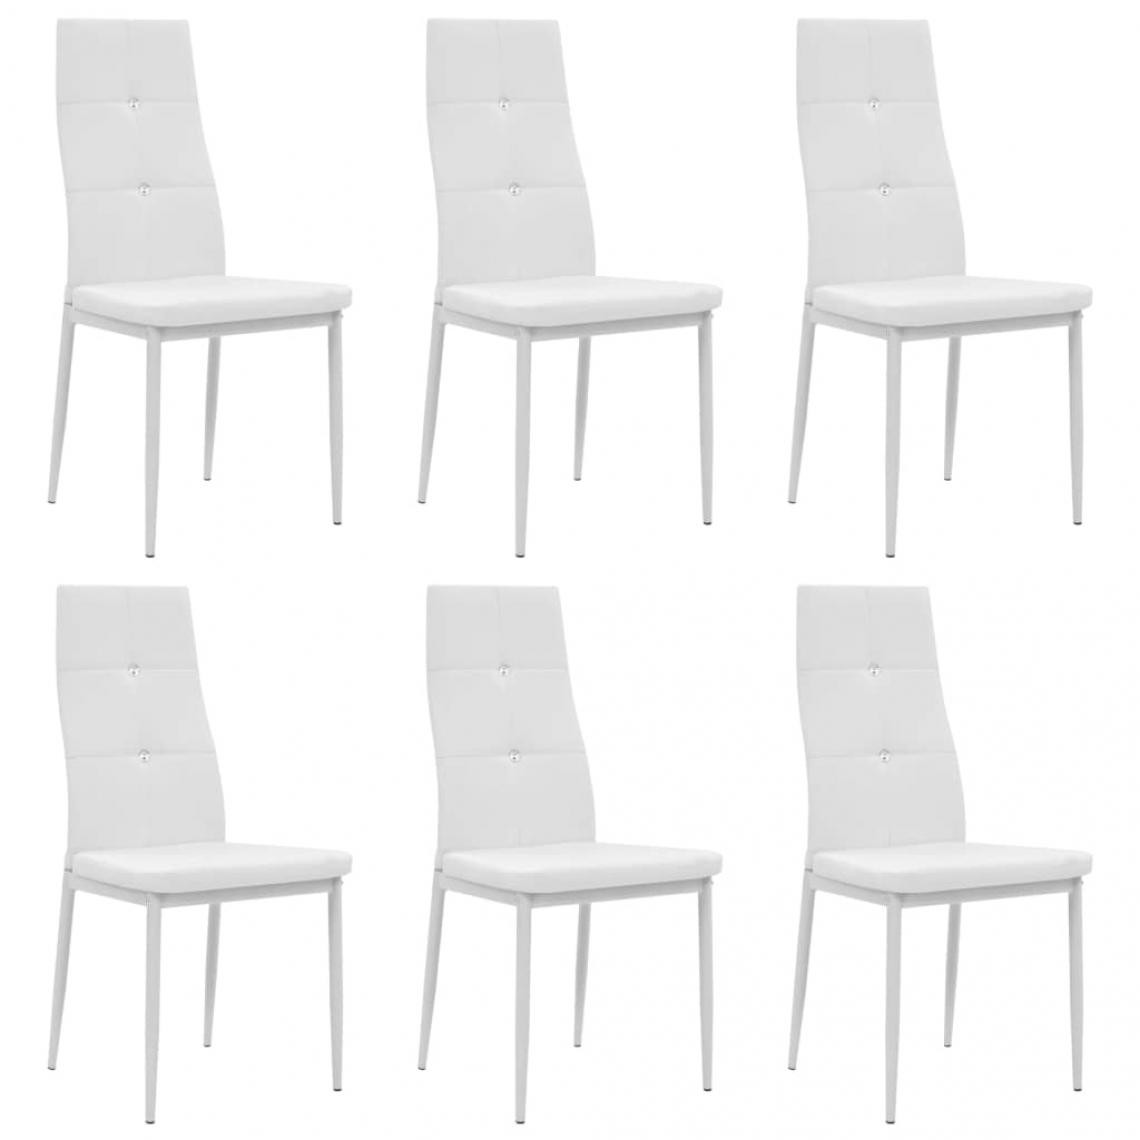 Decoshop26 - Lot de 6 chaises de salle à manger cuisine design élégant similicuir blanc CDS022165 - Chaises